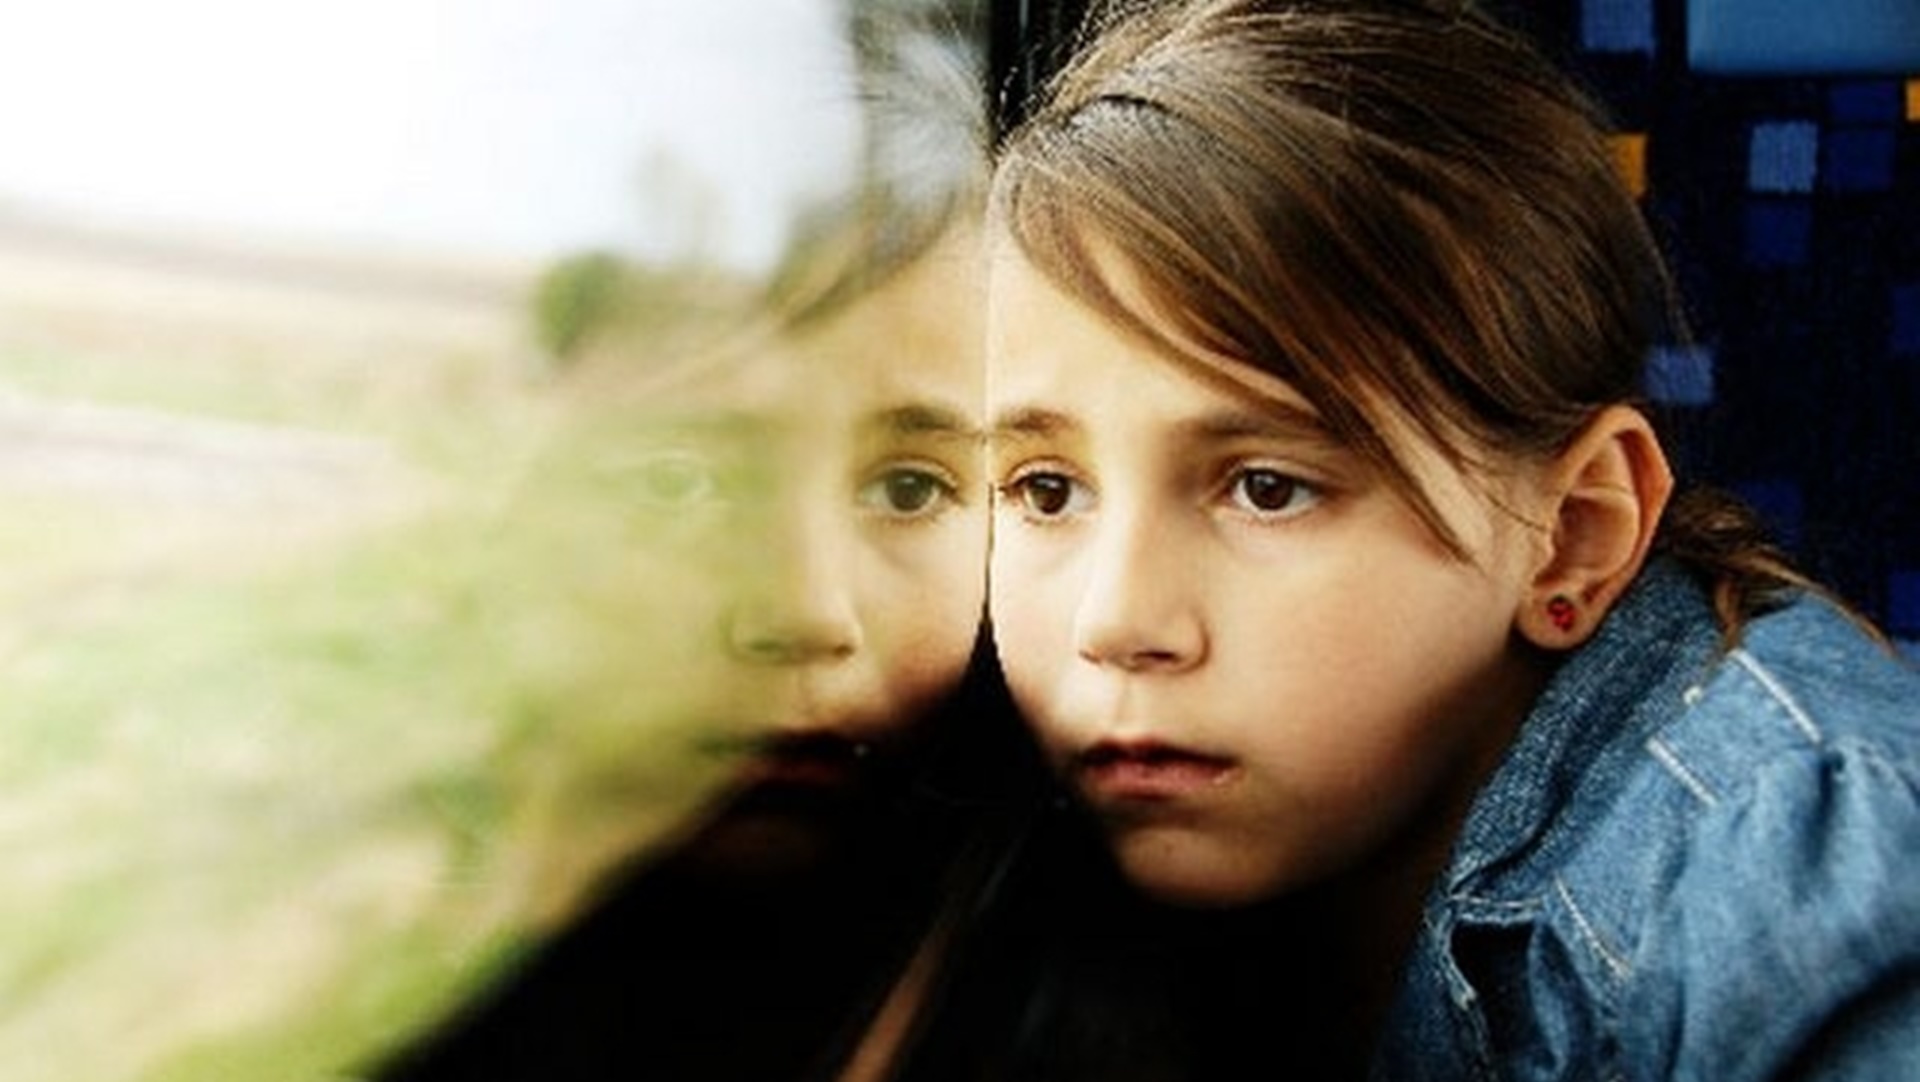 Hrvatska: Sve je više disfunkcionalnih obitelji, nasilja u obitelji kao i cyberbullyinga